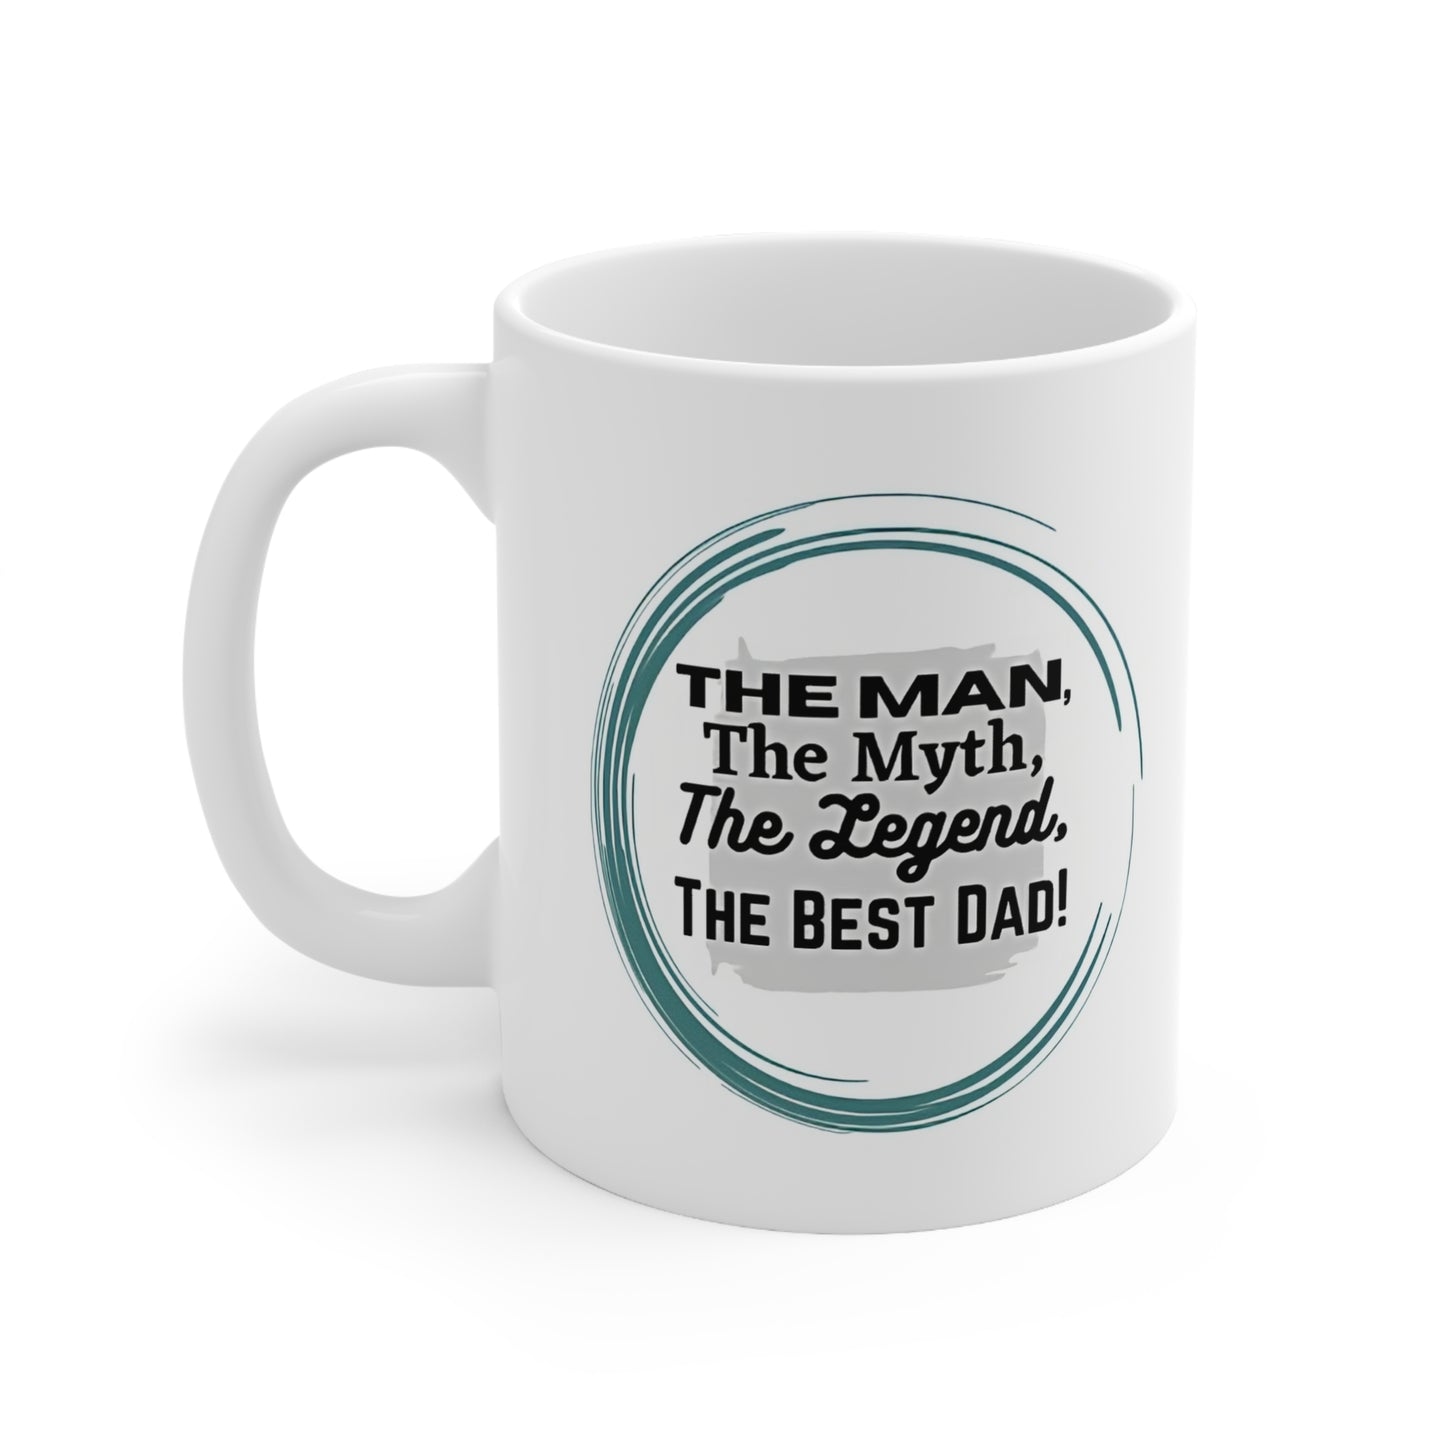 For Him - Appreciation | Ceramic Mug 11oz